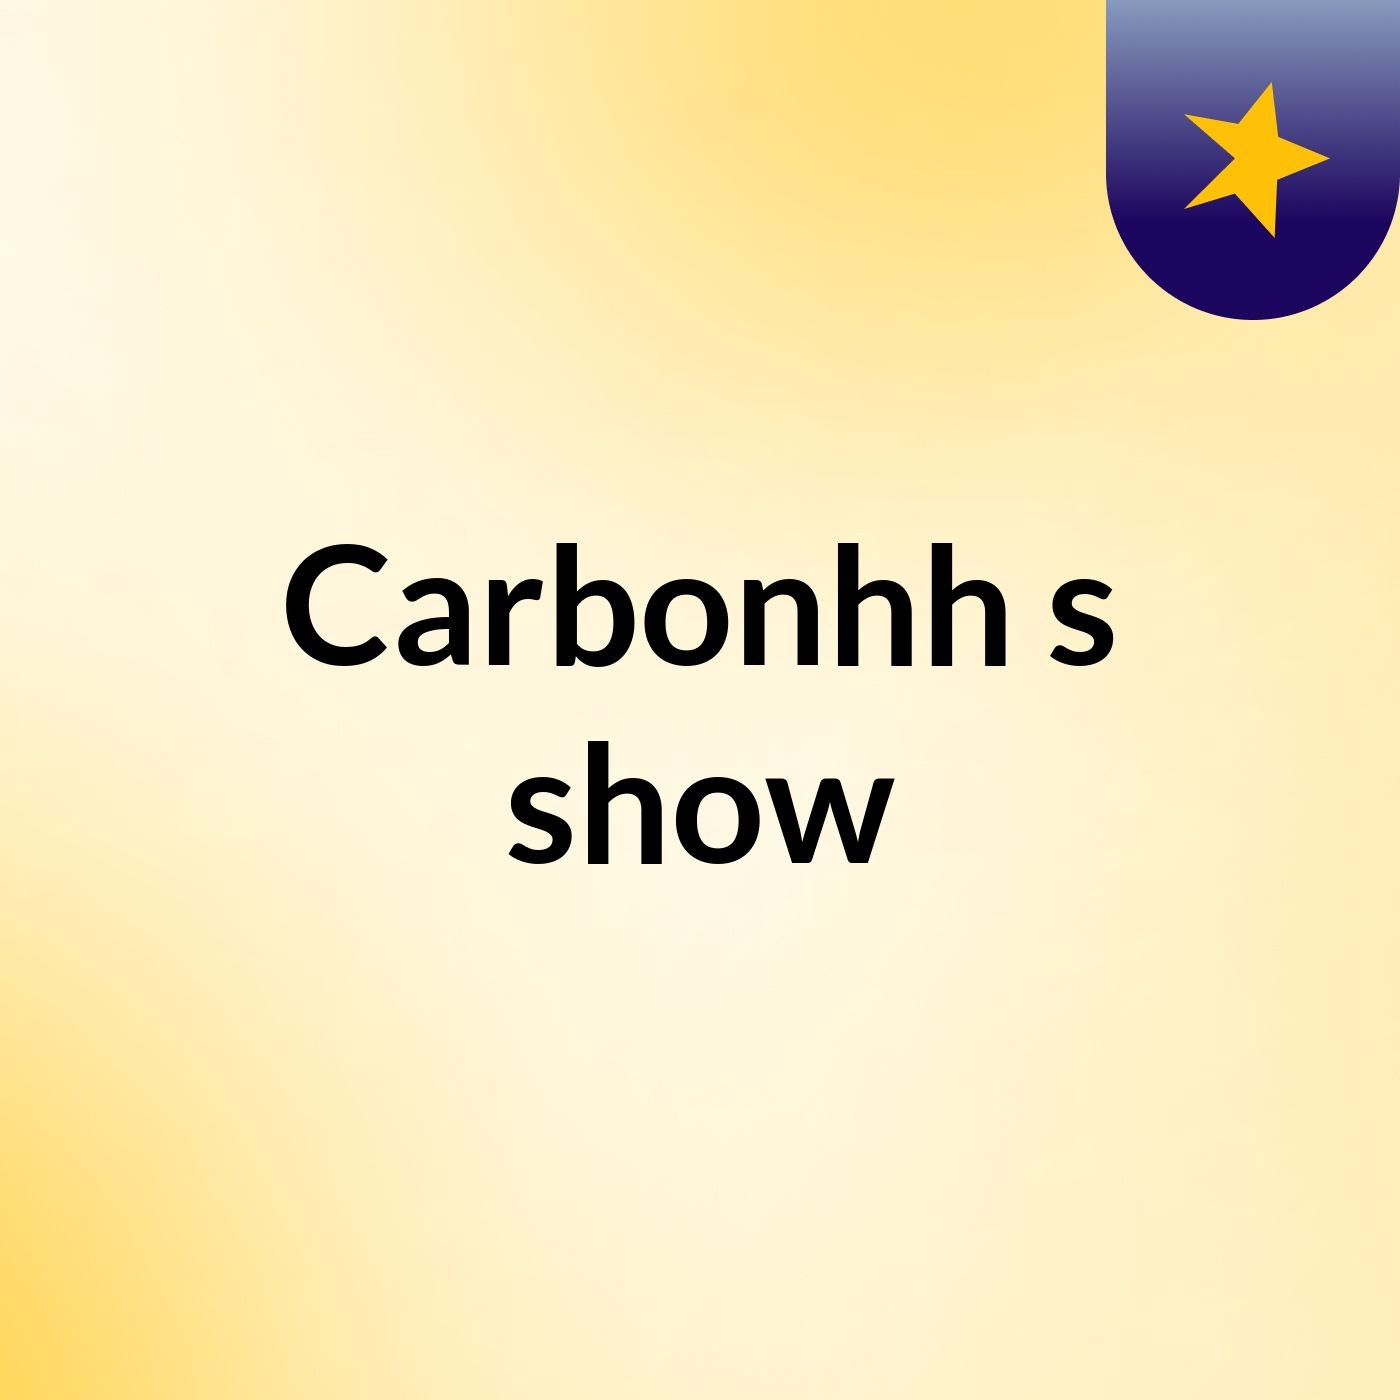 Carbonhh's show